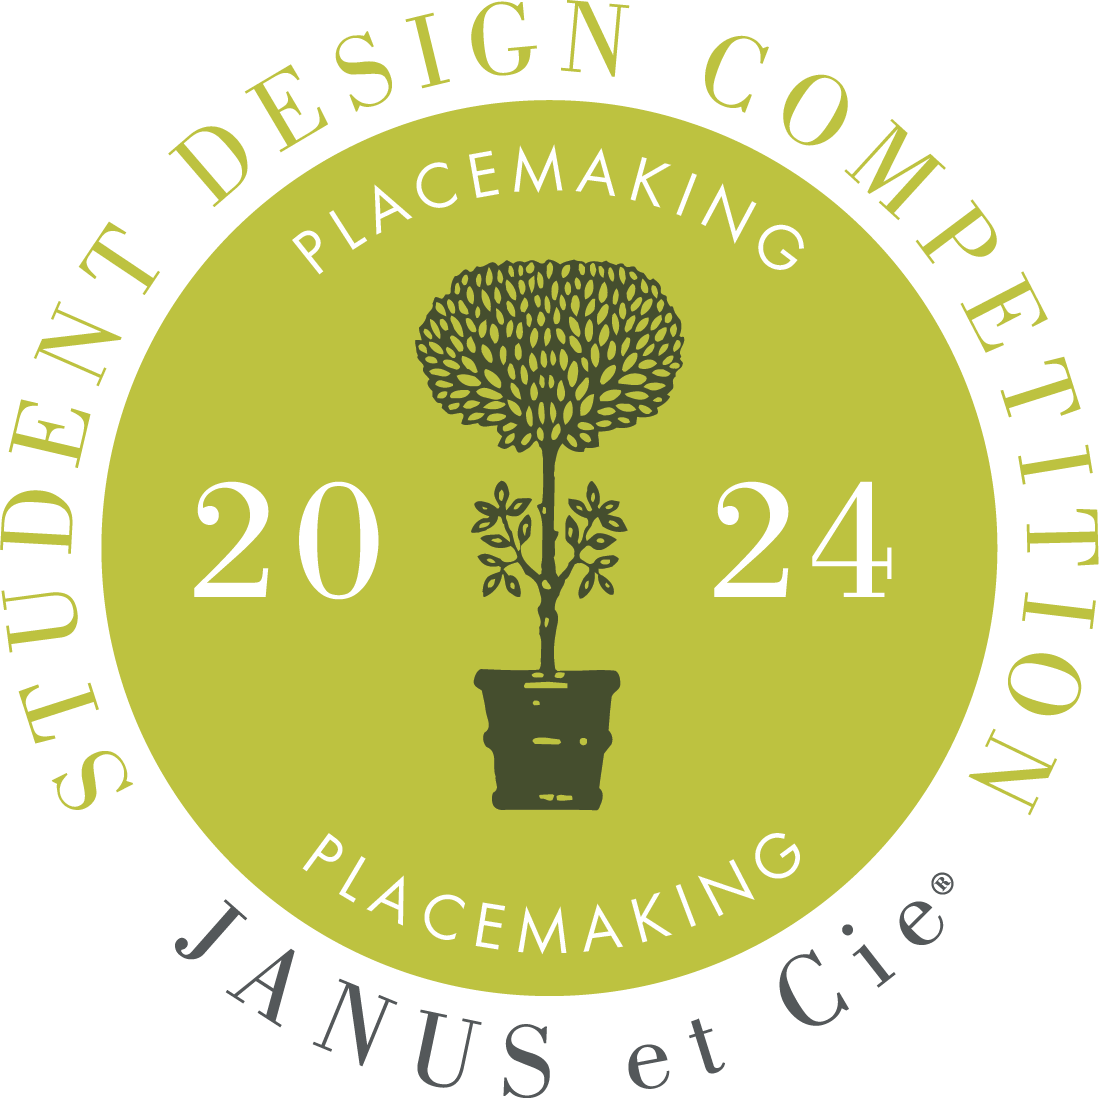 JANUS et Cie Student Design Competition